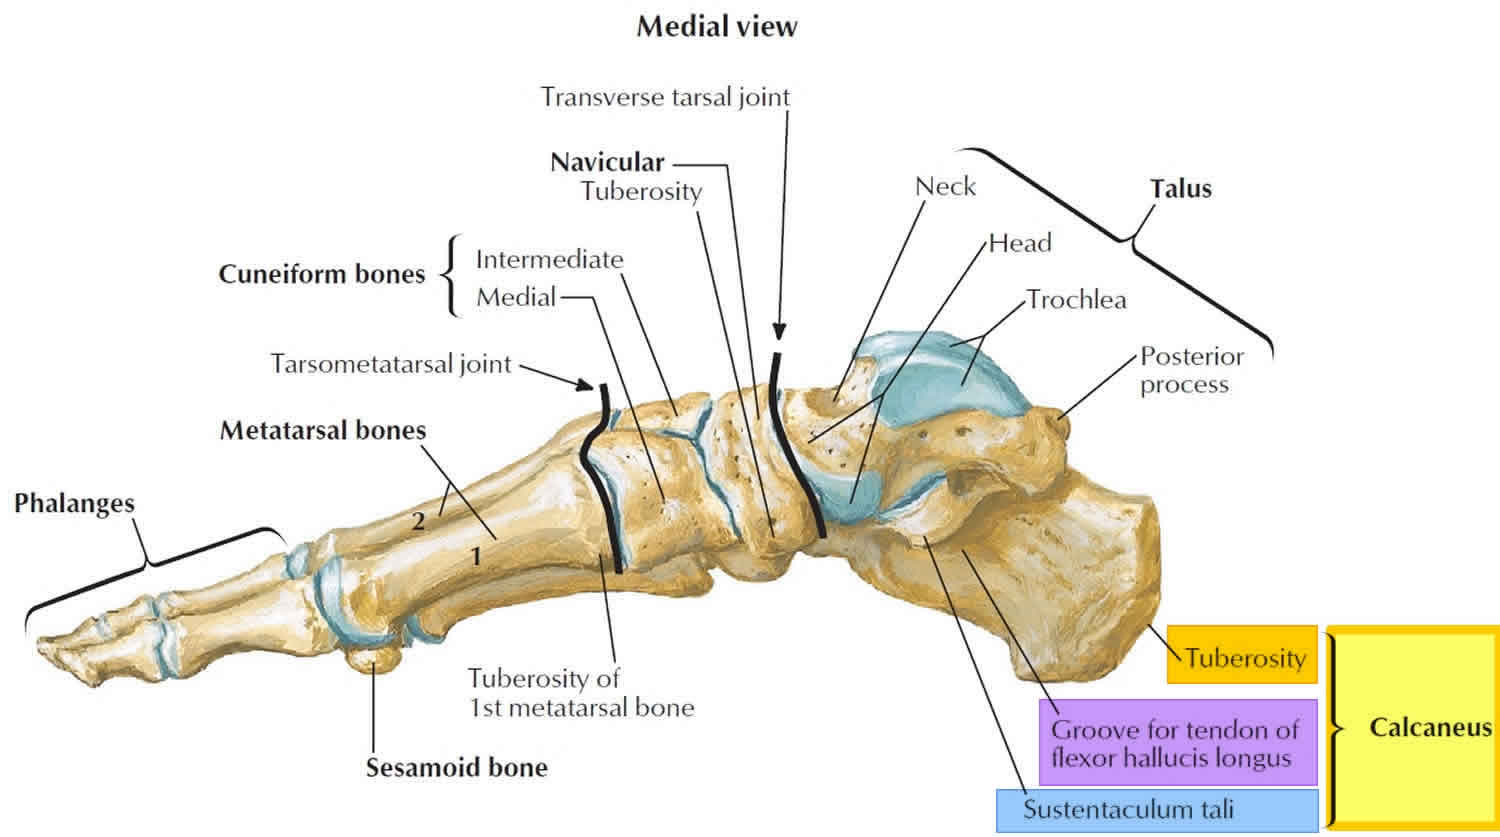 Calcaneus bone anatomy, function, calcaneus pain & calcaneus fracture